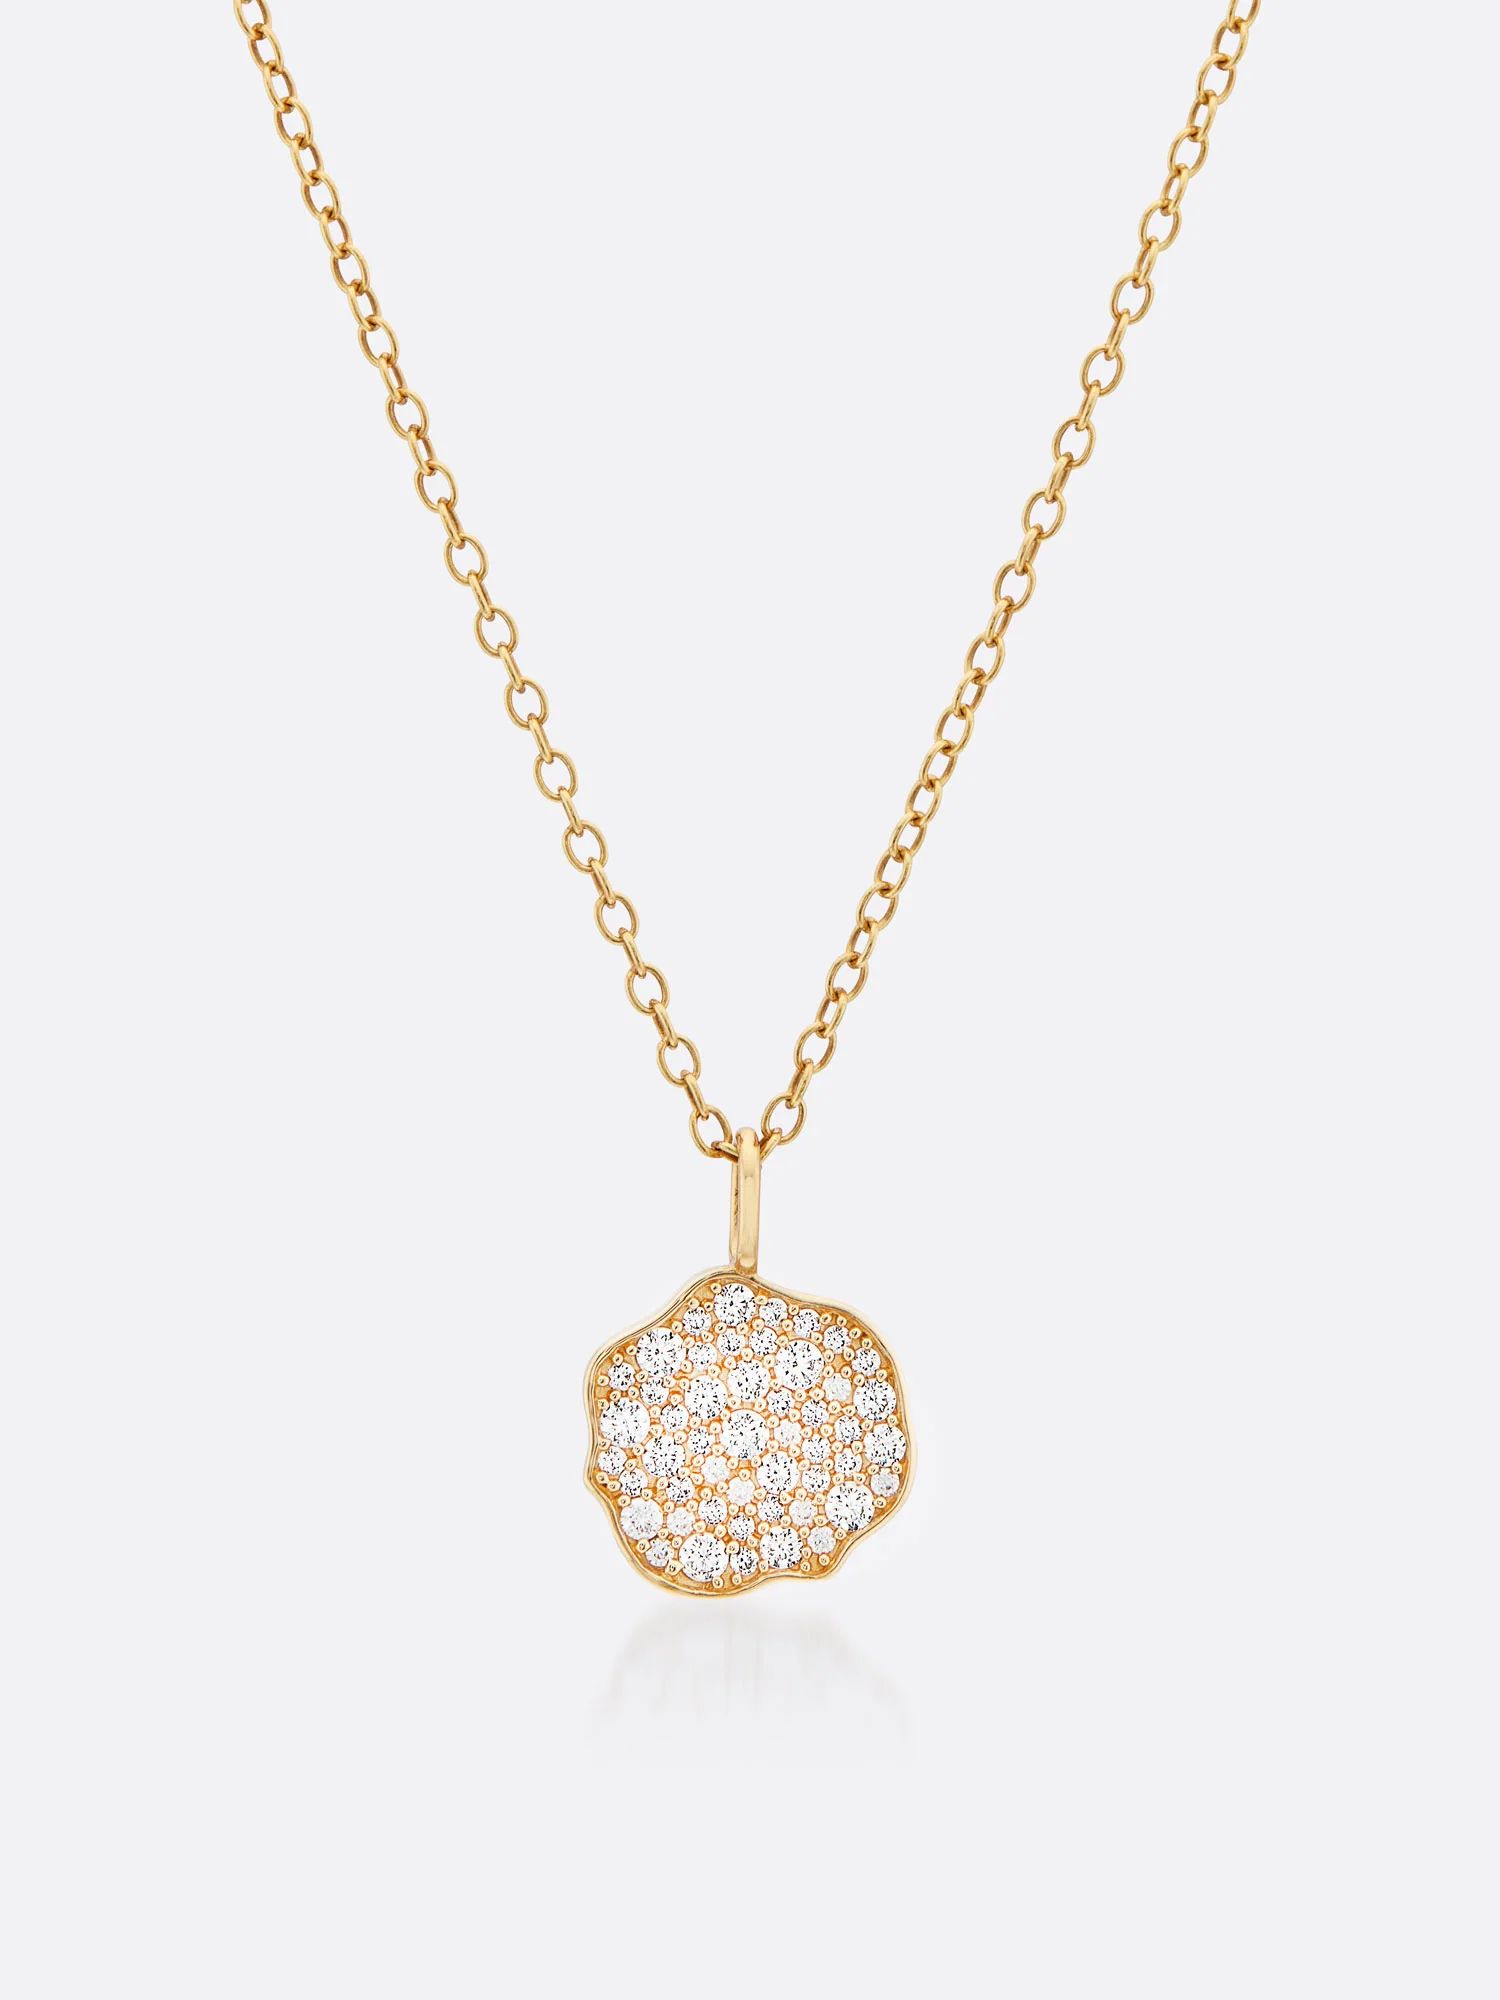 Brochu Walker | Women's Fine Jewelry Petite Fleur Pavé Diamond Mini Pendant Necklace | Brochu Walker